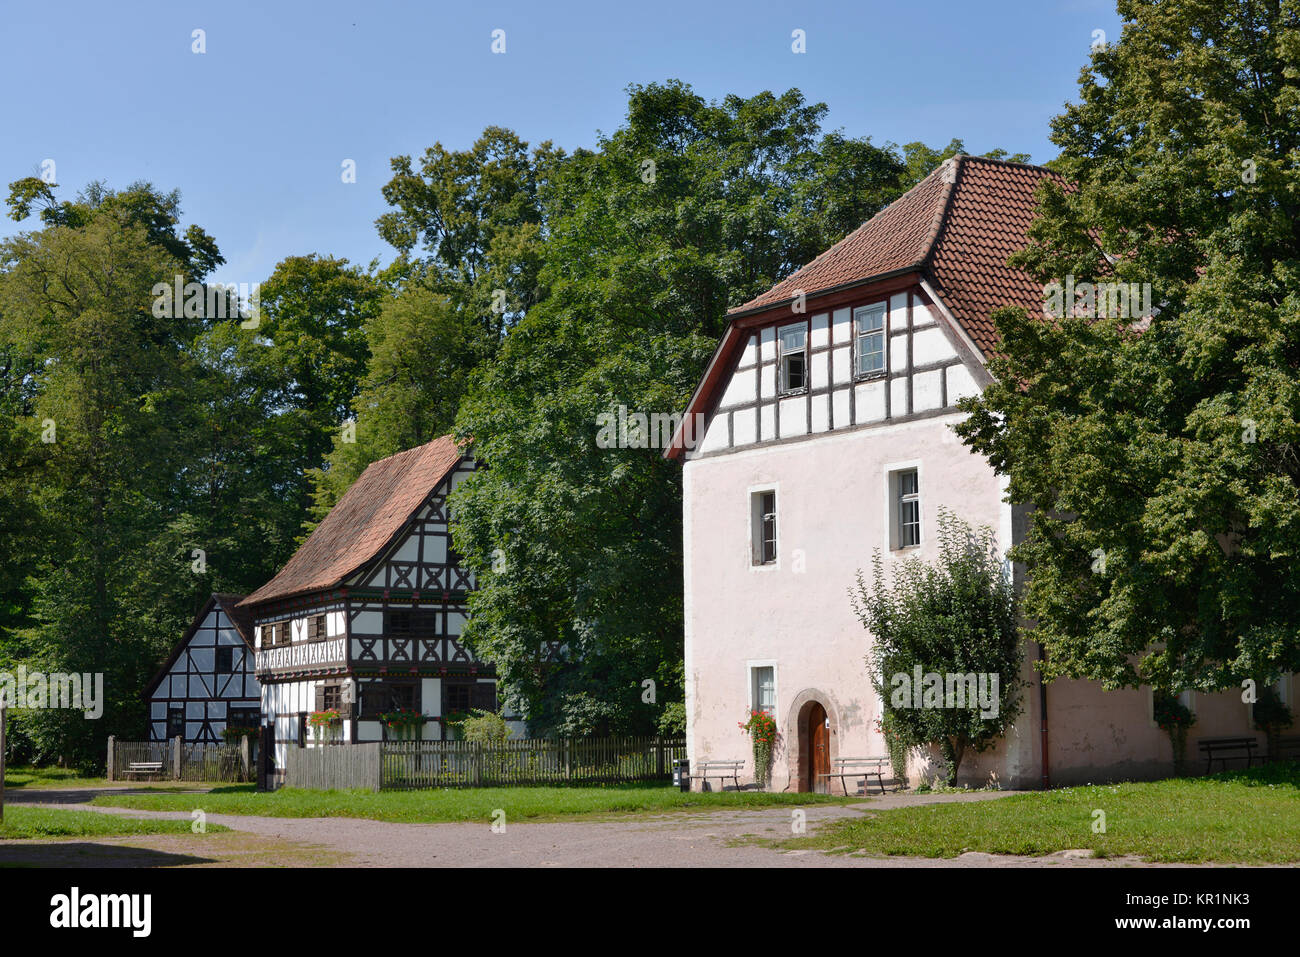 Bauernhäuser, Freilichtmuseum, Vessra, Thüringen, Deutschland, Bauernhaeuser, Freilichtmuseum, Thüringen, Deutschland Stockfoto